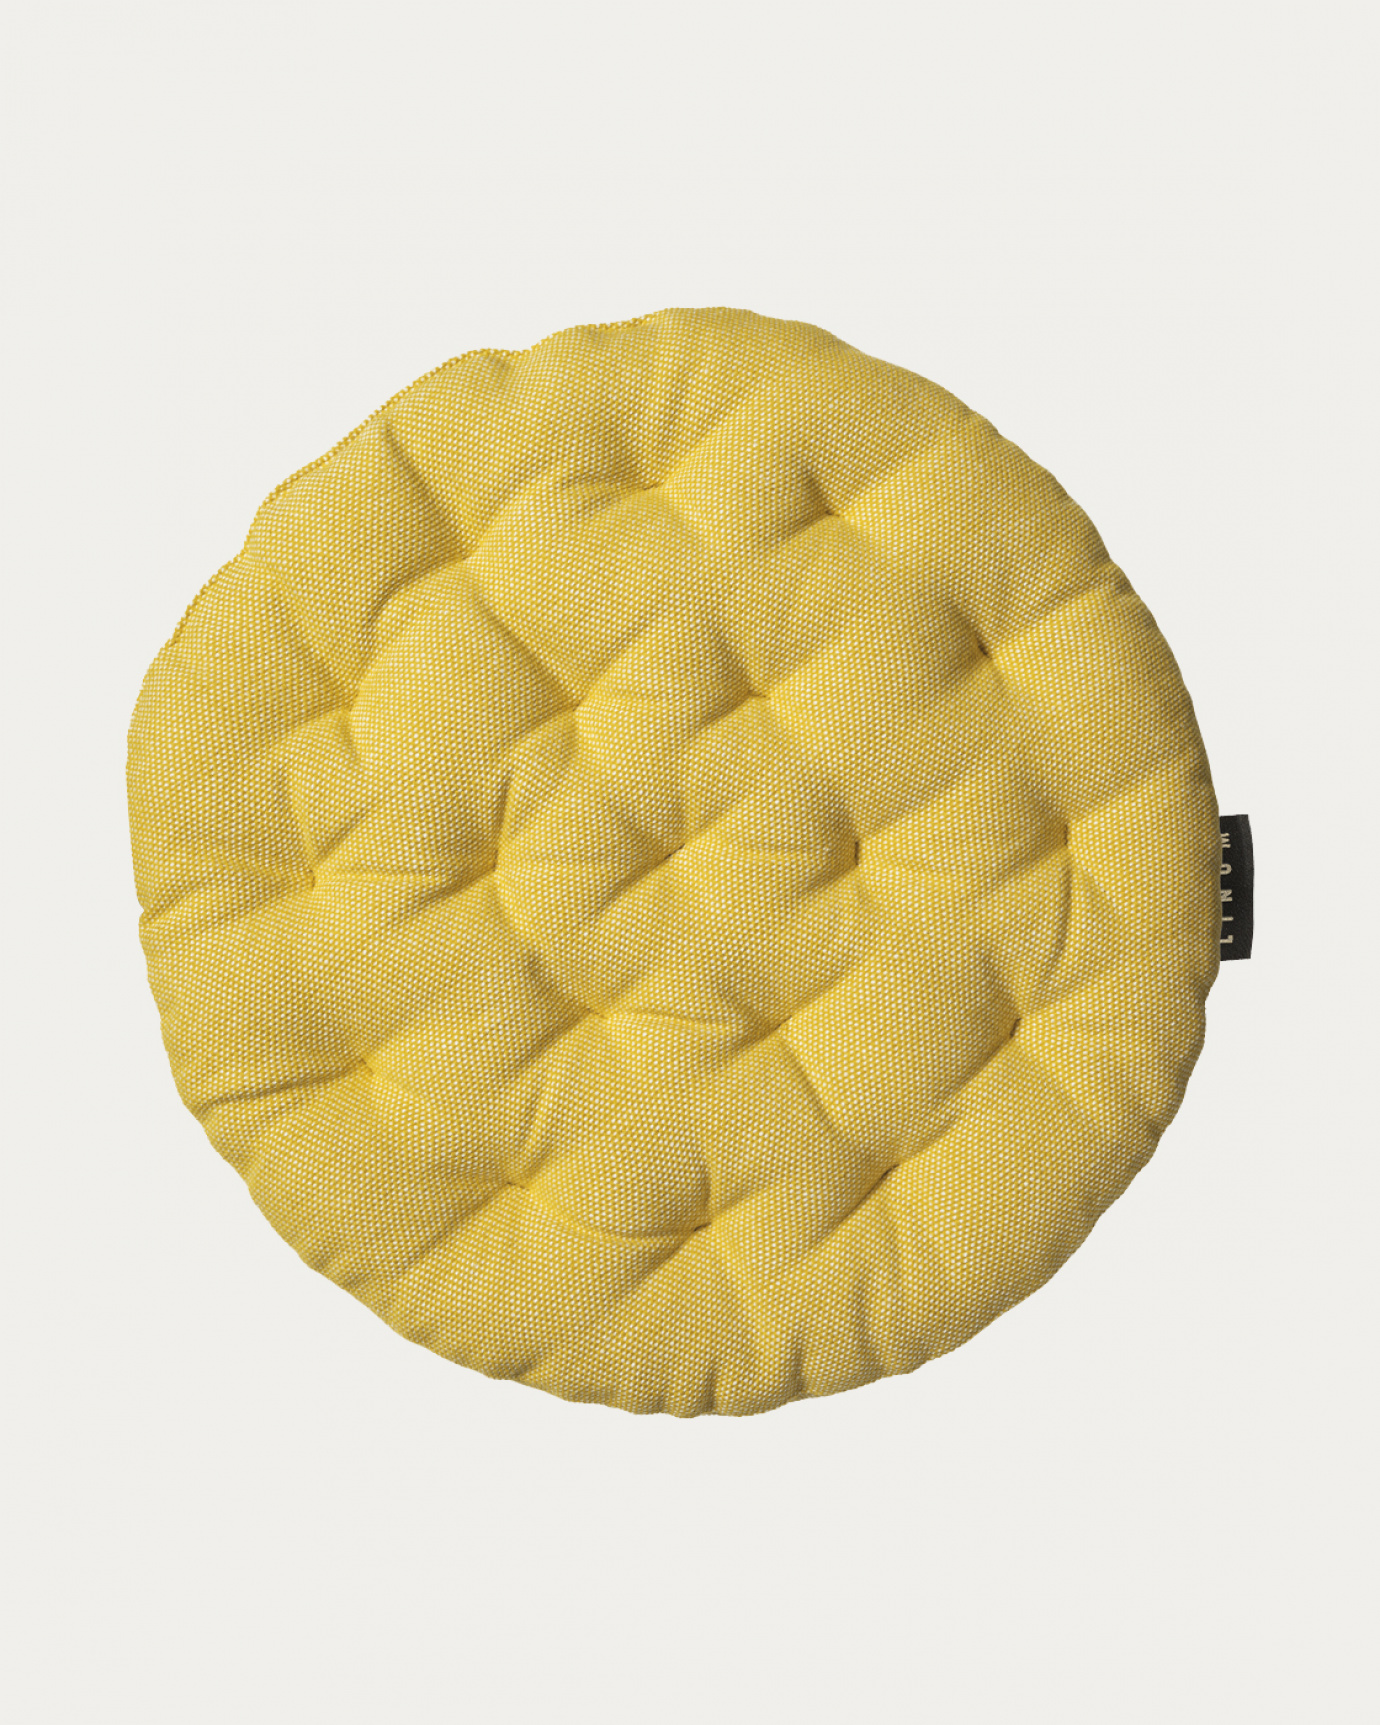 Immagine prodotto giallo mostarda PEPPER cuscini sedie di cotone con imbottitura in poliestere di LINUM DESIGN. Dimensioni ø37 cm.